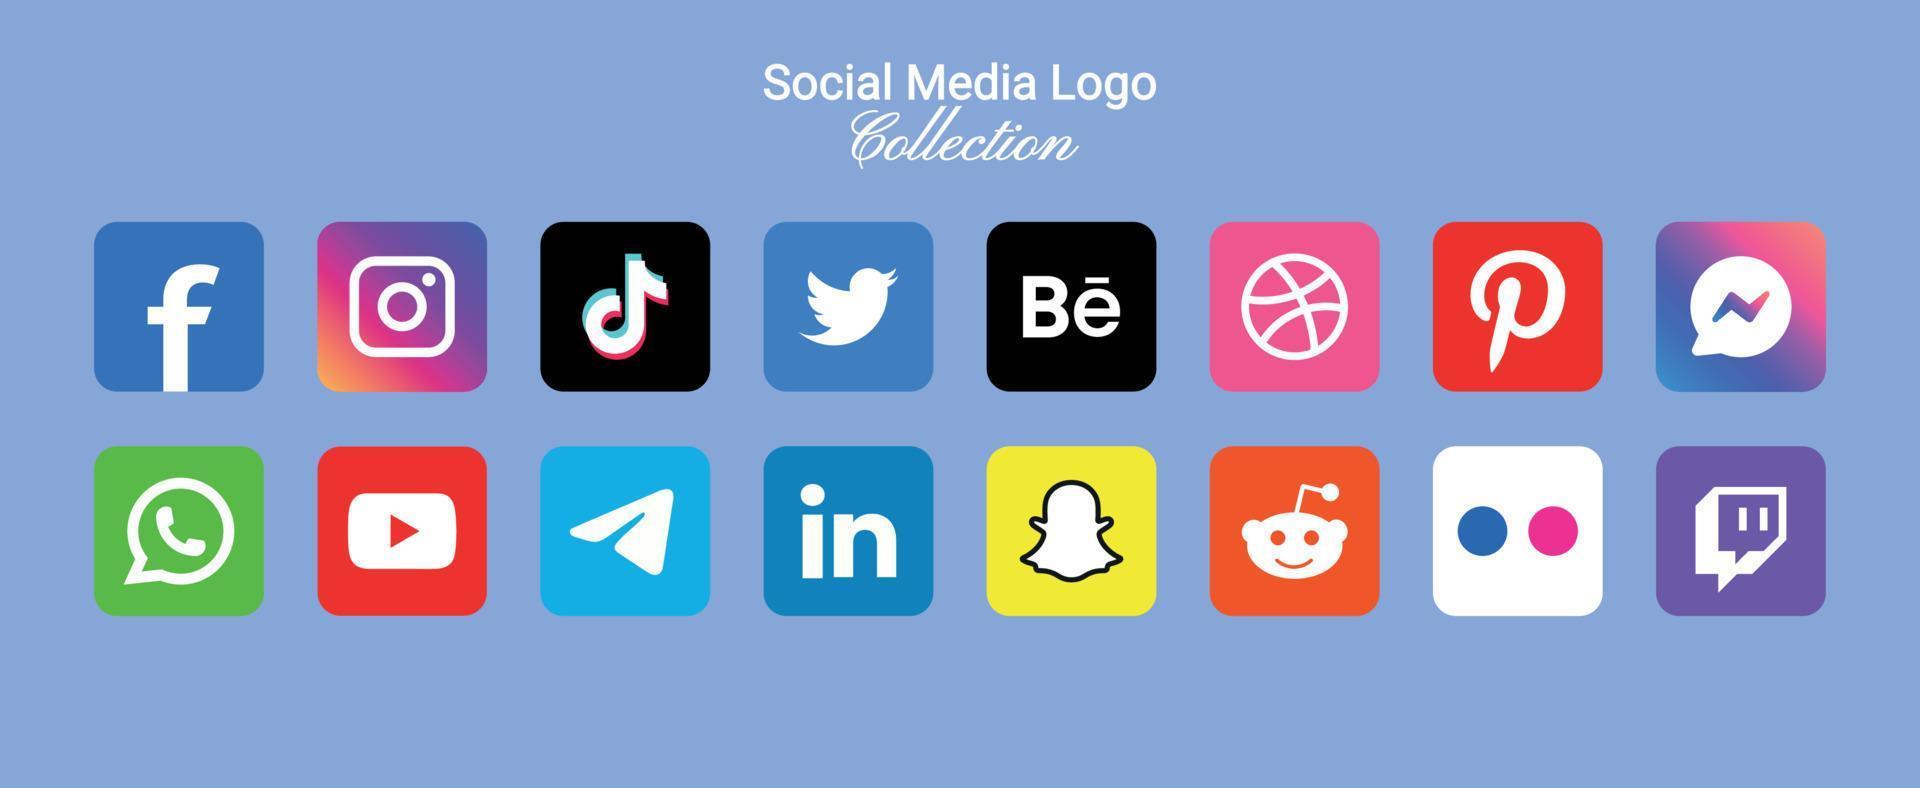 populaire social réseau symboles, social médias logo Icônes collection vecteur